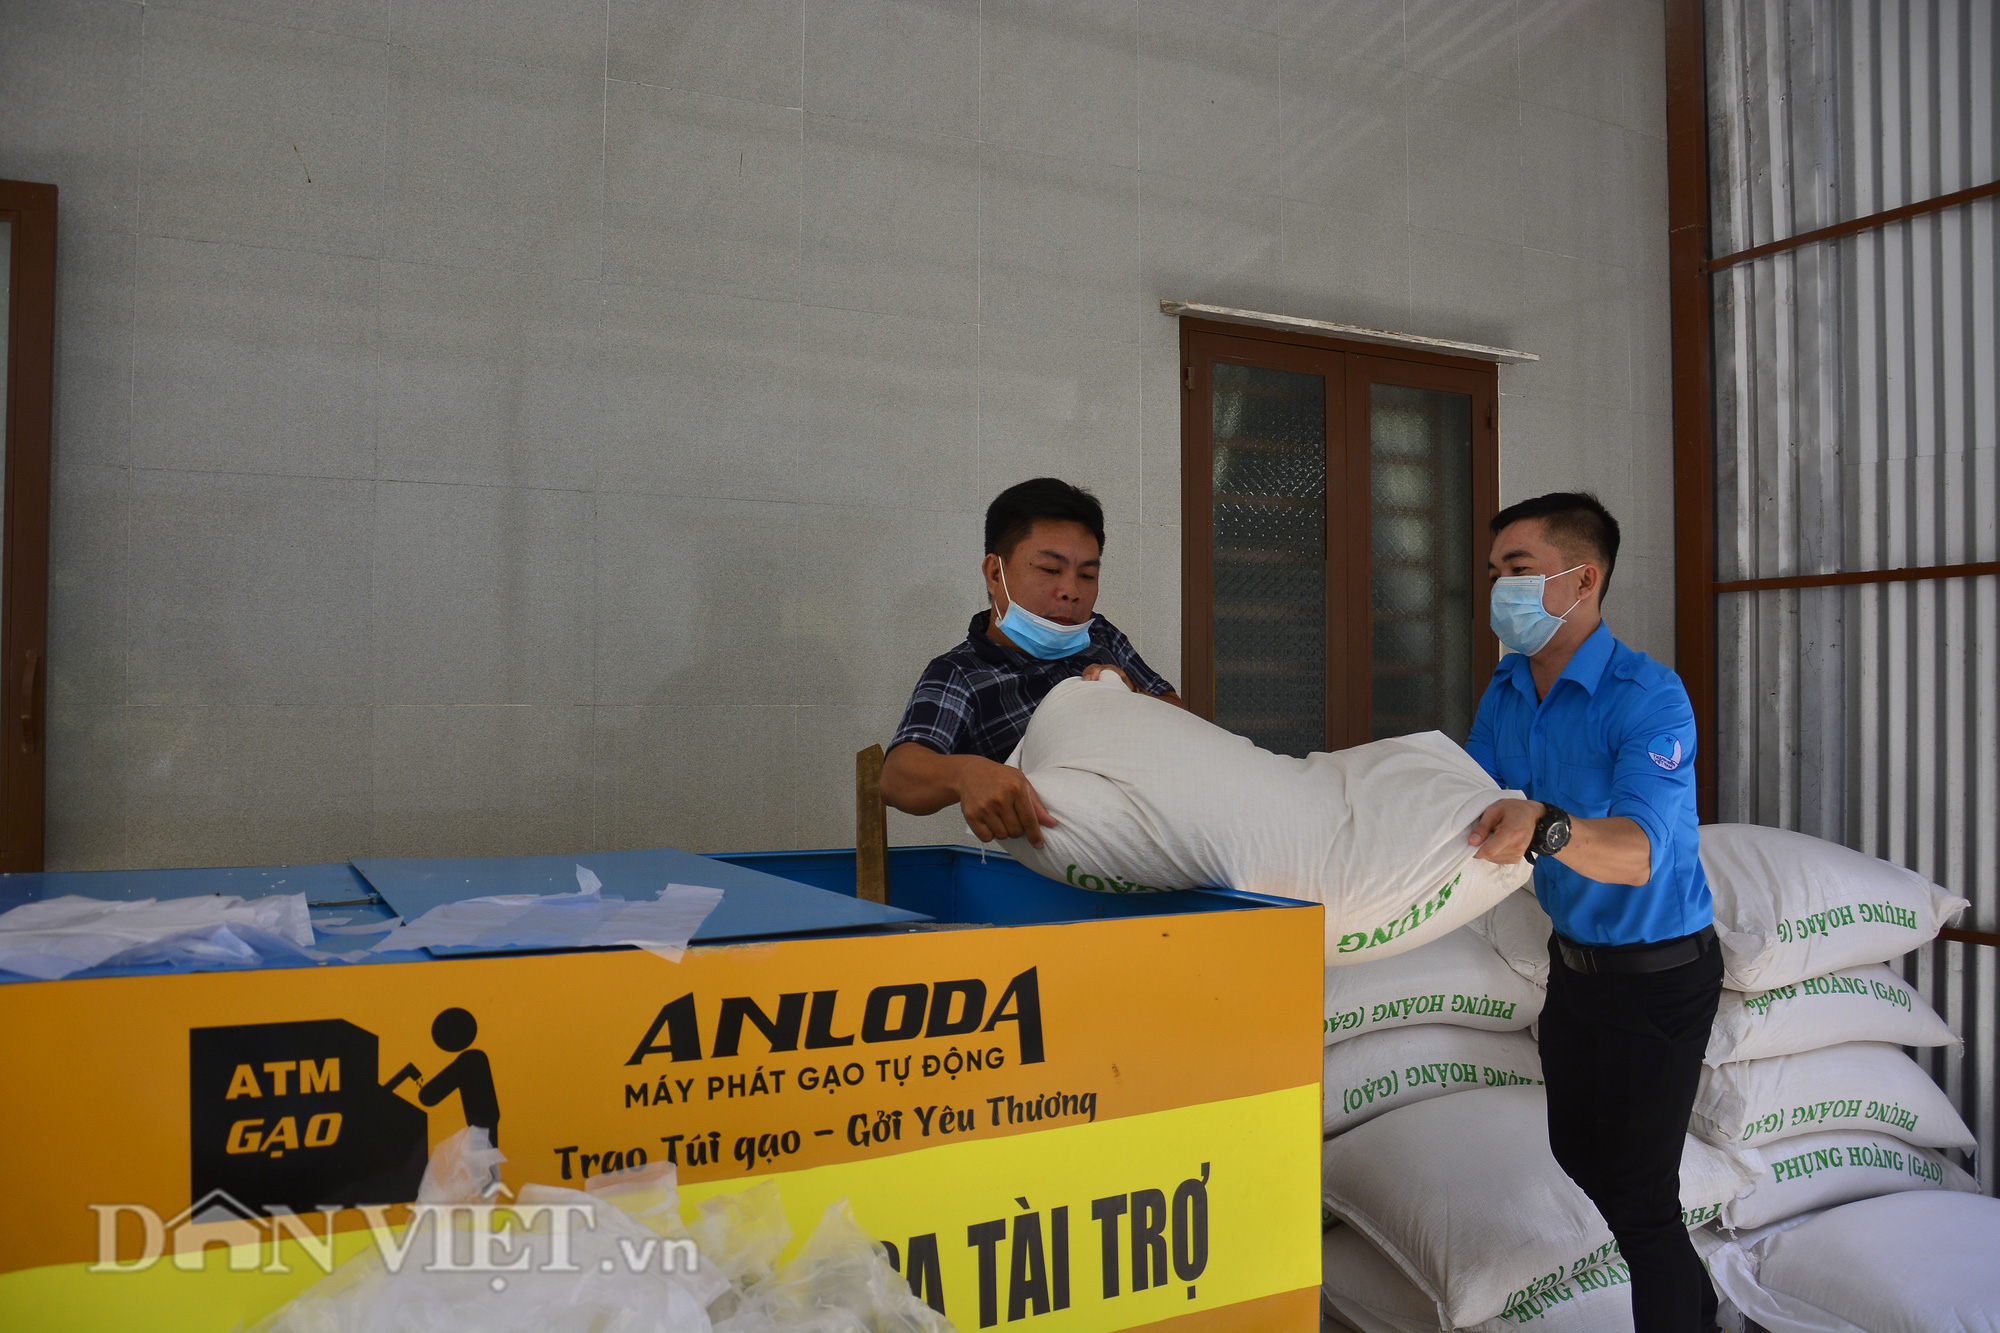 Kiên Giang: “ATM gạo” về vùng nông thôn, dân nghèo đỡ khổ - Ảnh 9.